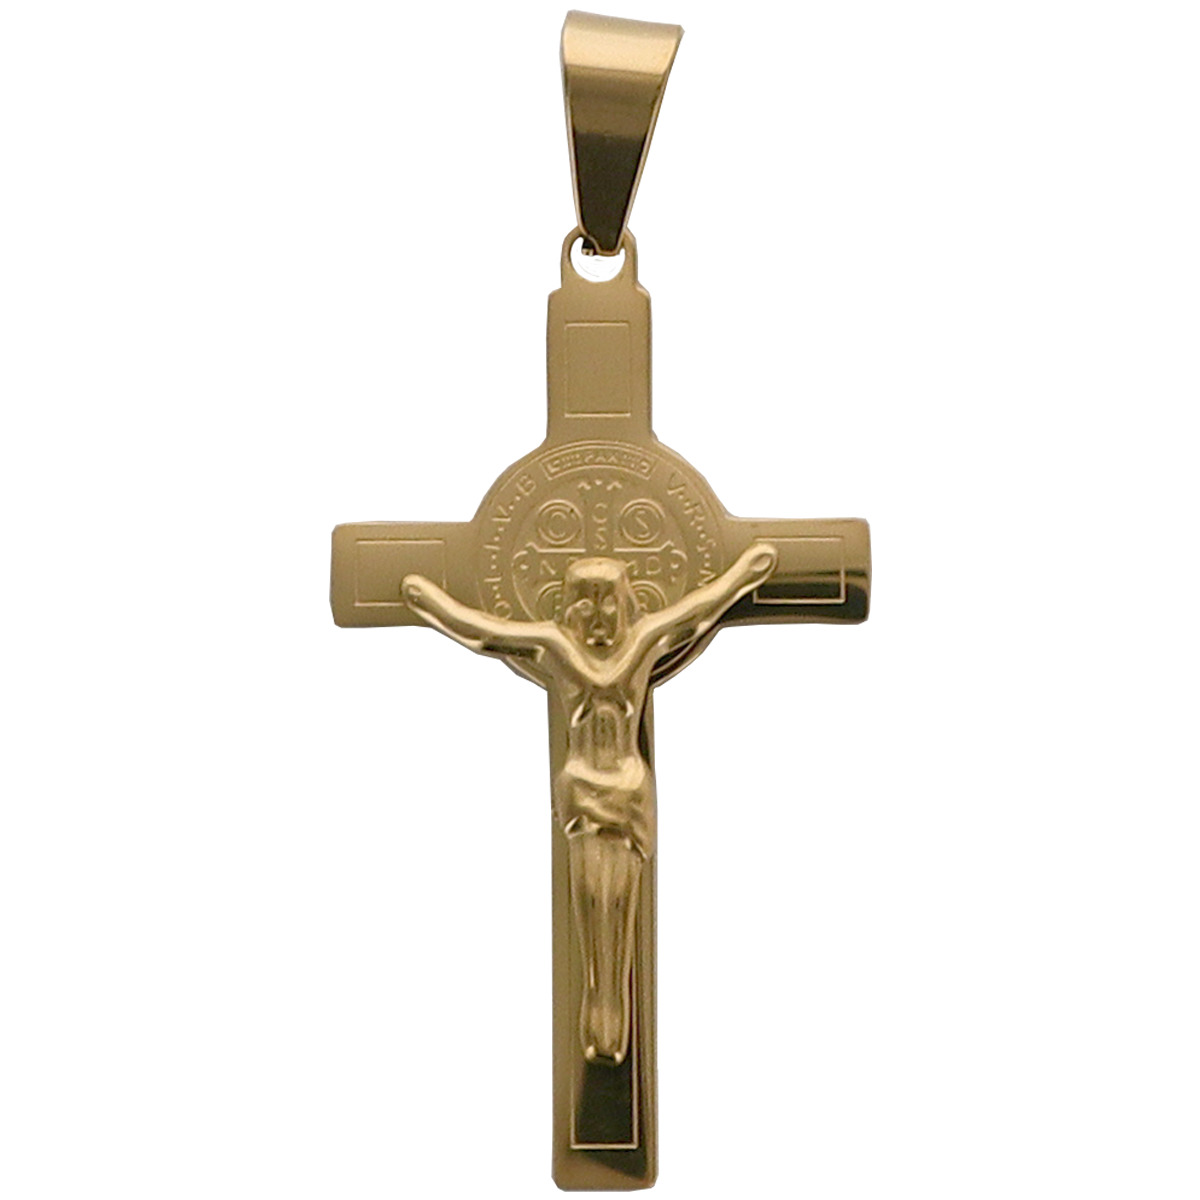 Croix de cou de Saint Benoit en acier inoxydable, H 4.50 cm. Existe de différentes couleurs.